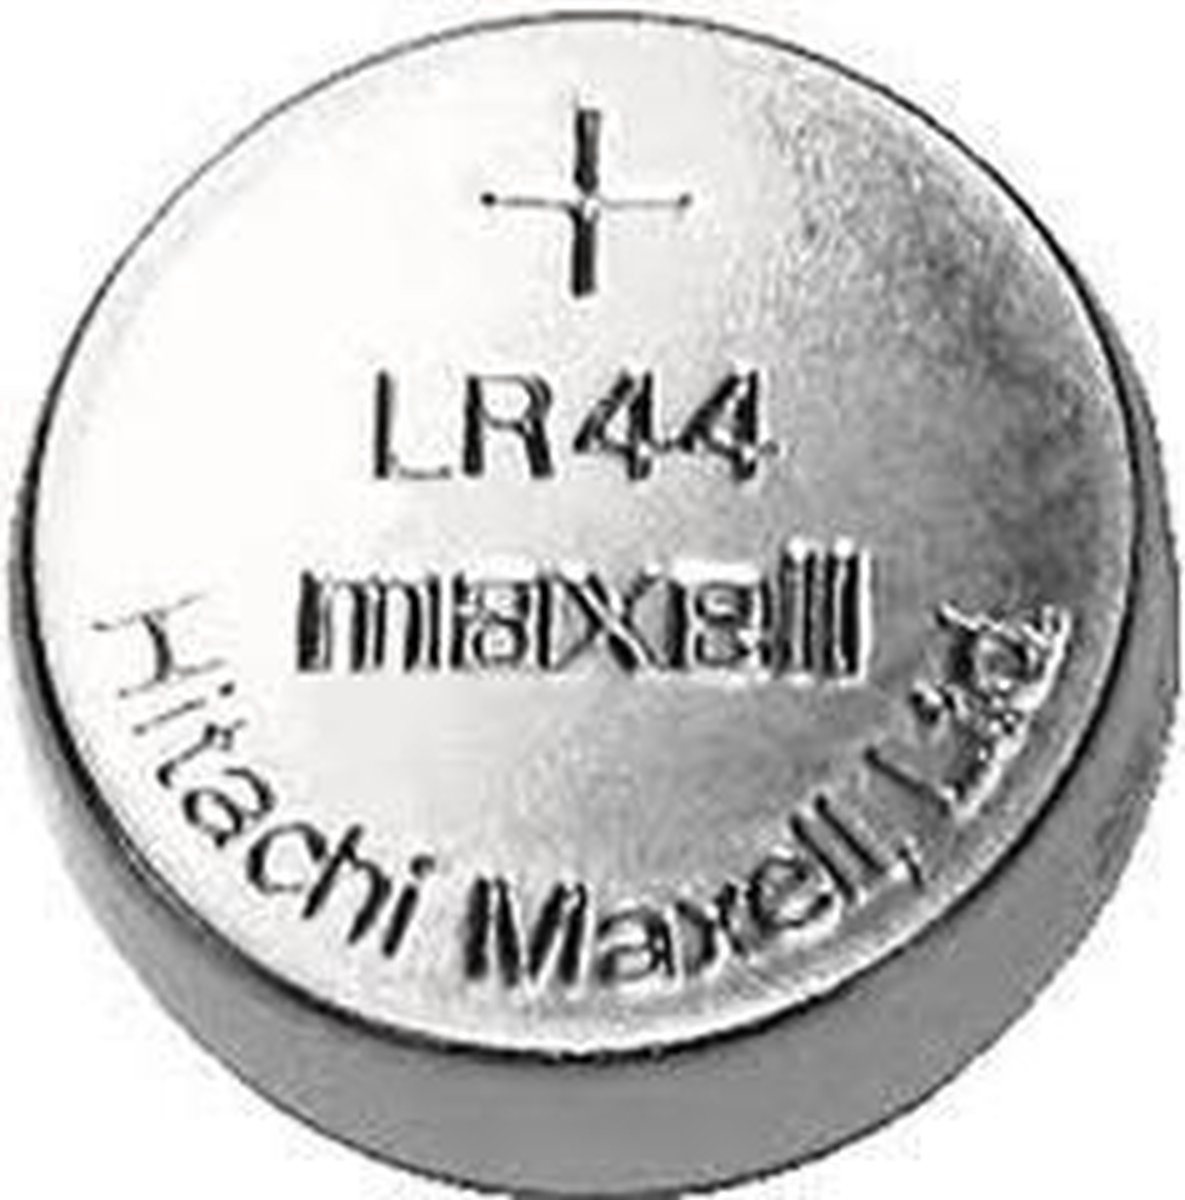 Maxell Alkaline LR44 1.5V 10 stuks